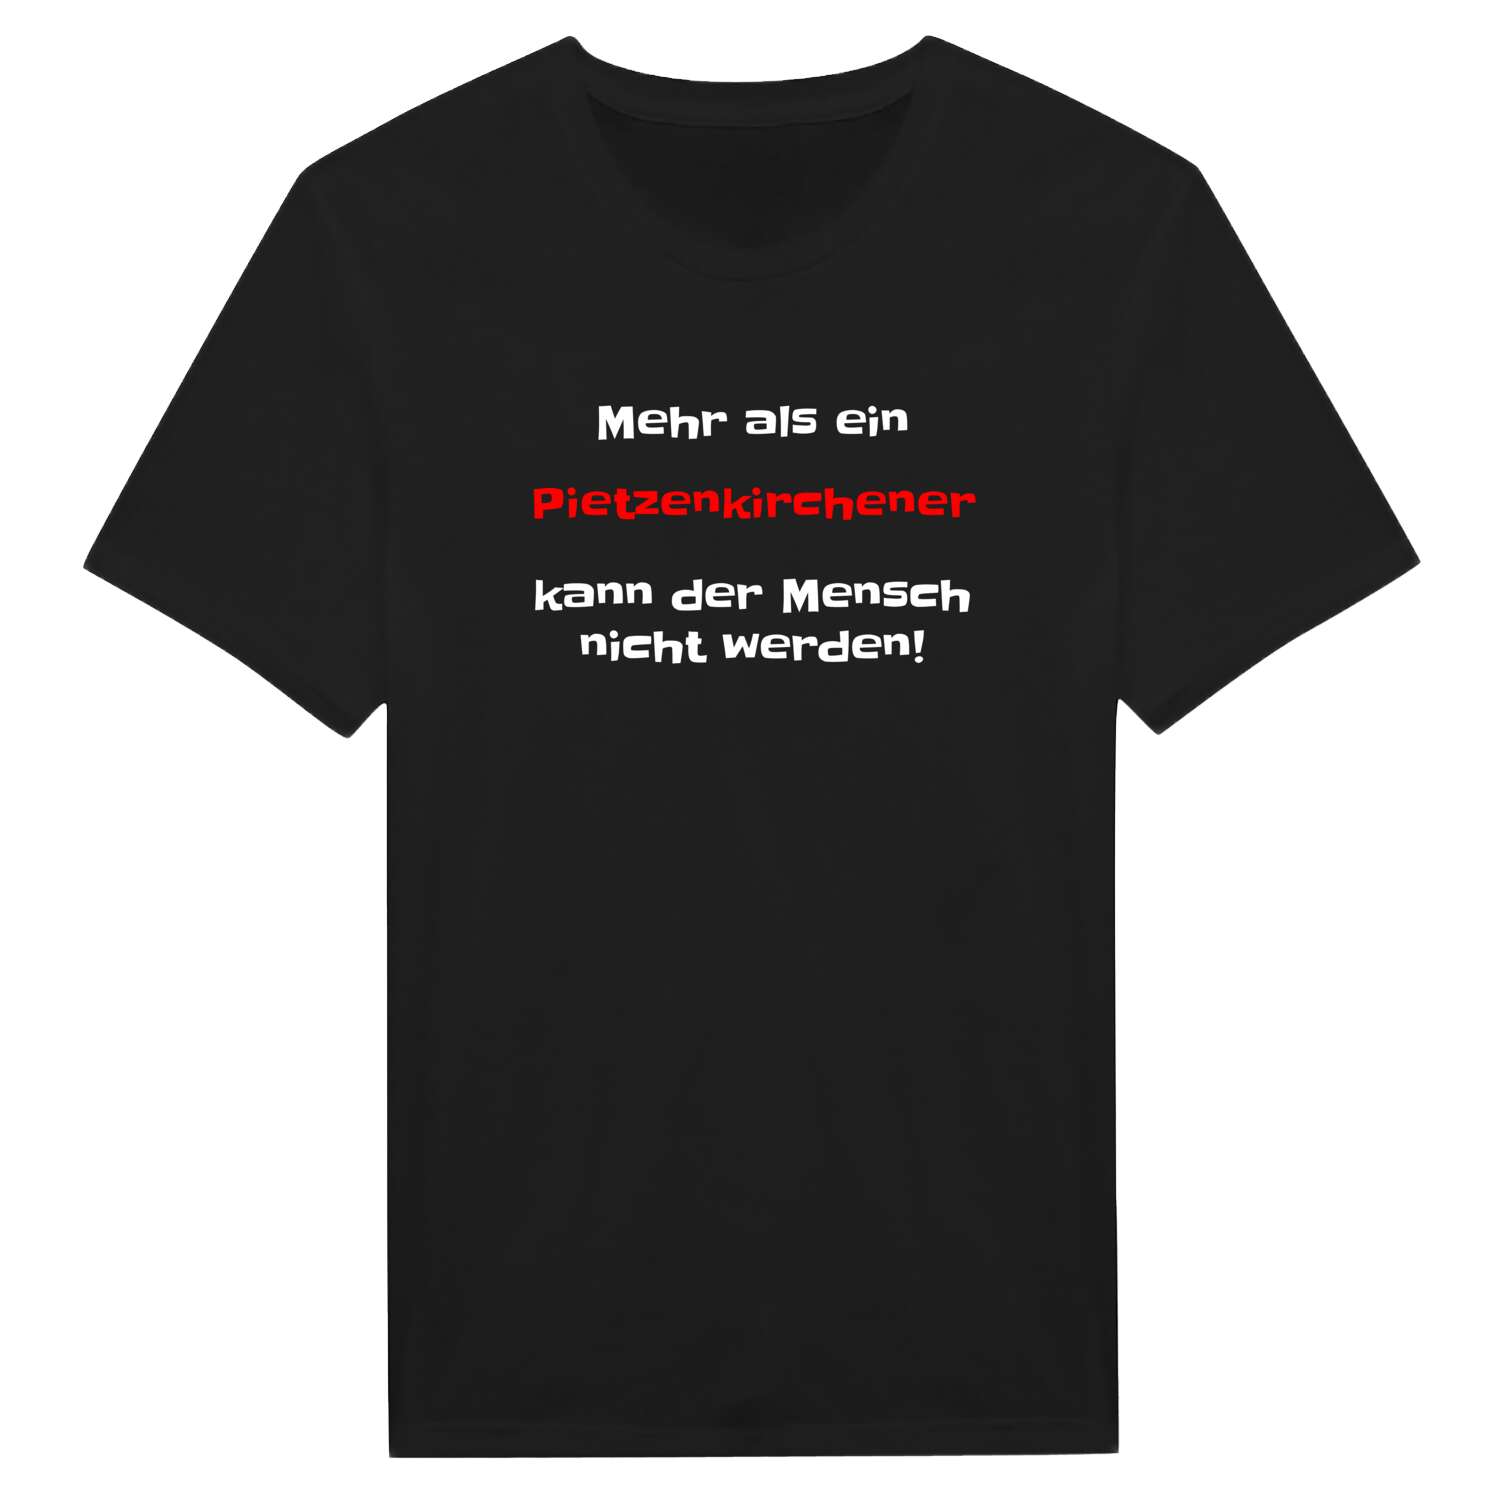 Pietzenkirchen T-Shirt »Mehr als ein«